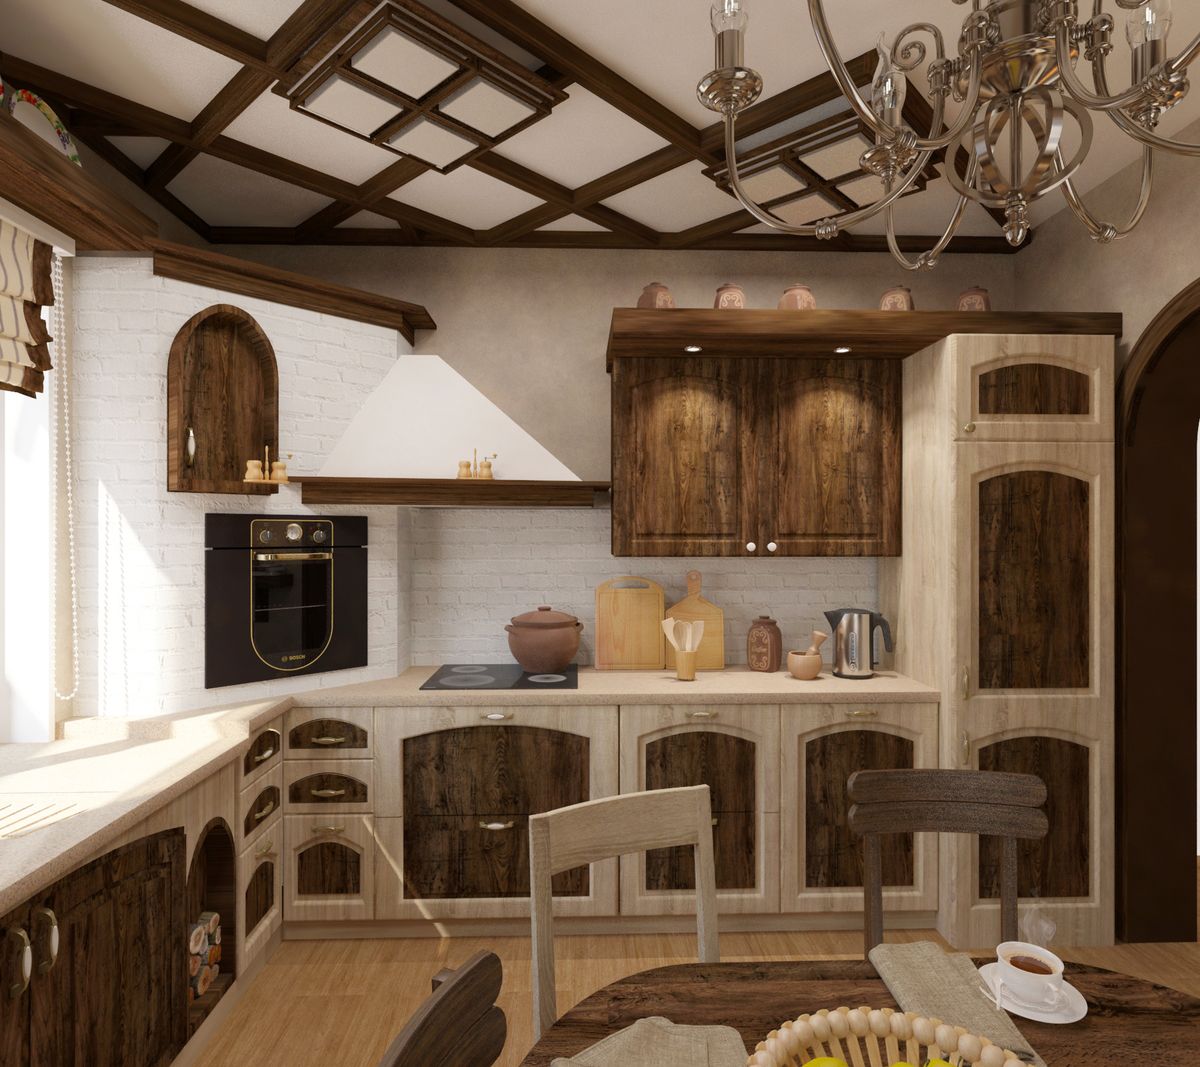 Интерьер маленькой кухни в деревянном доме